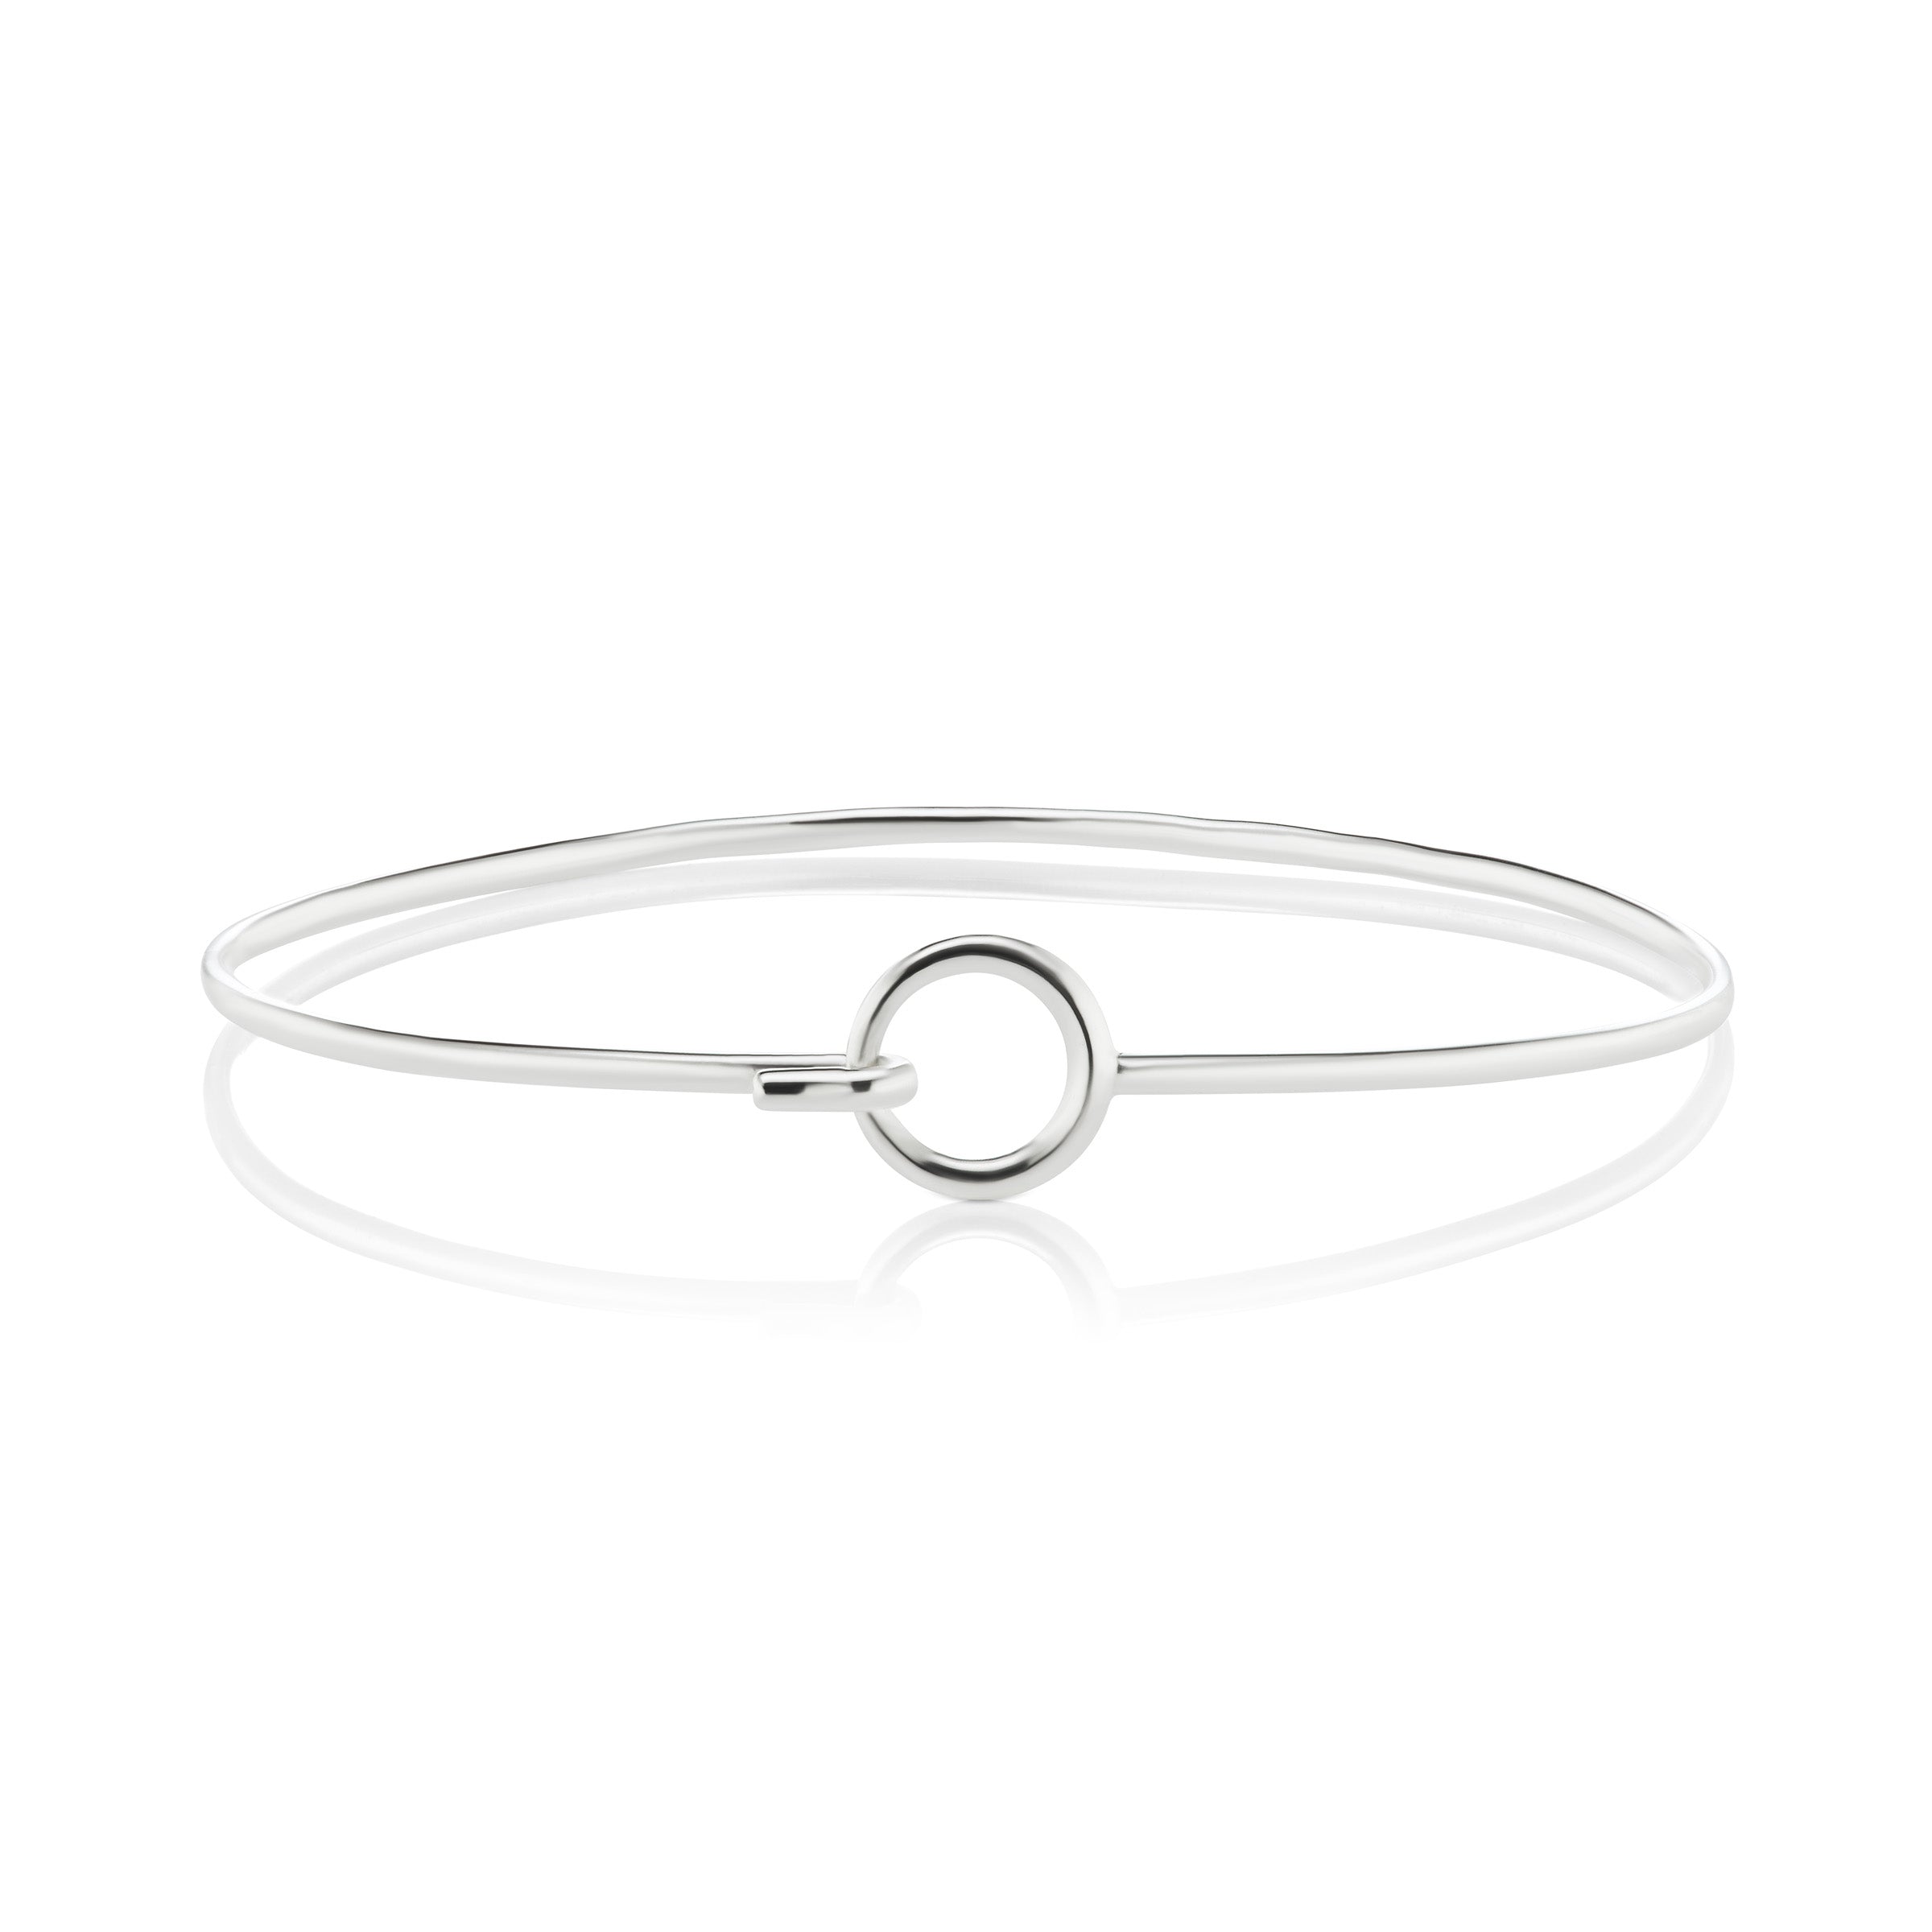 The Silver Hooked Loop Bracelet